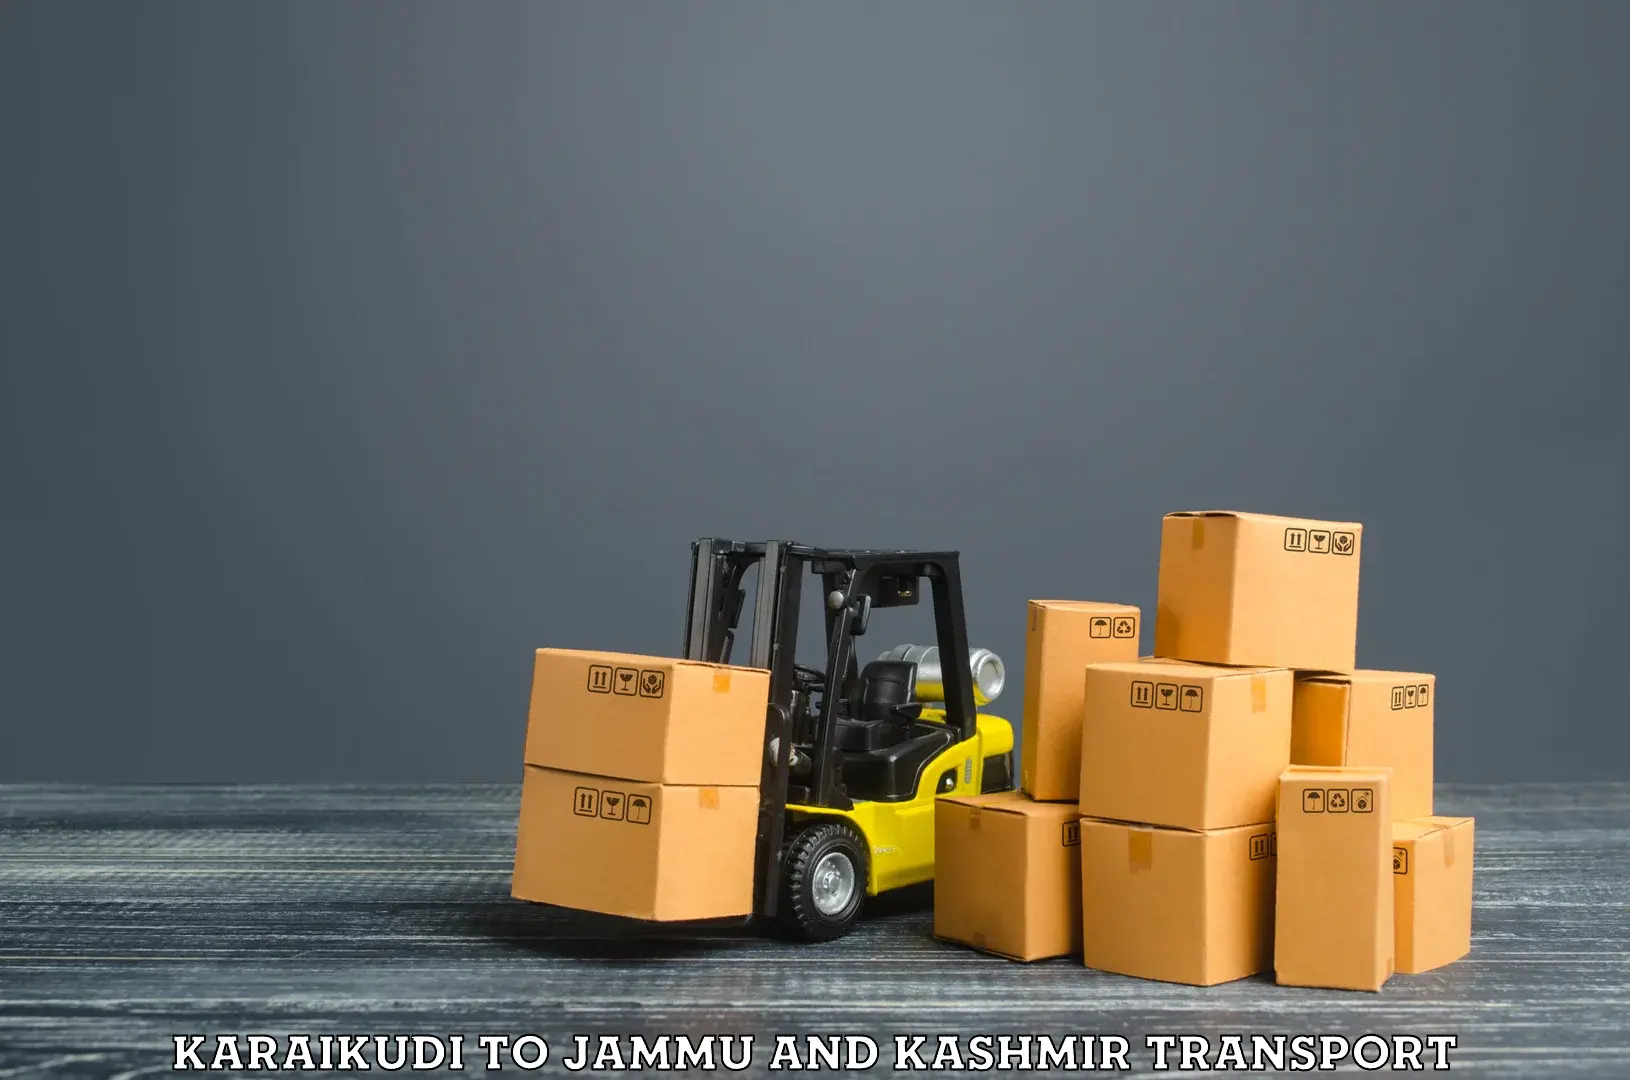 Shipping partner Karaikudi to Katra